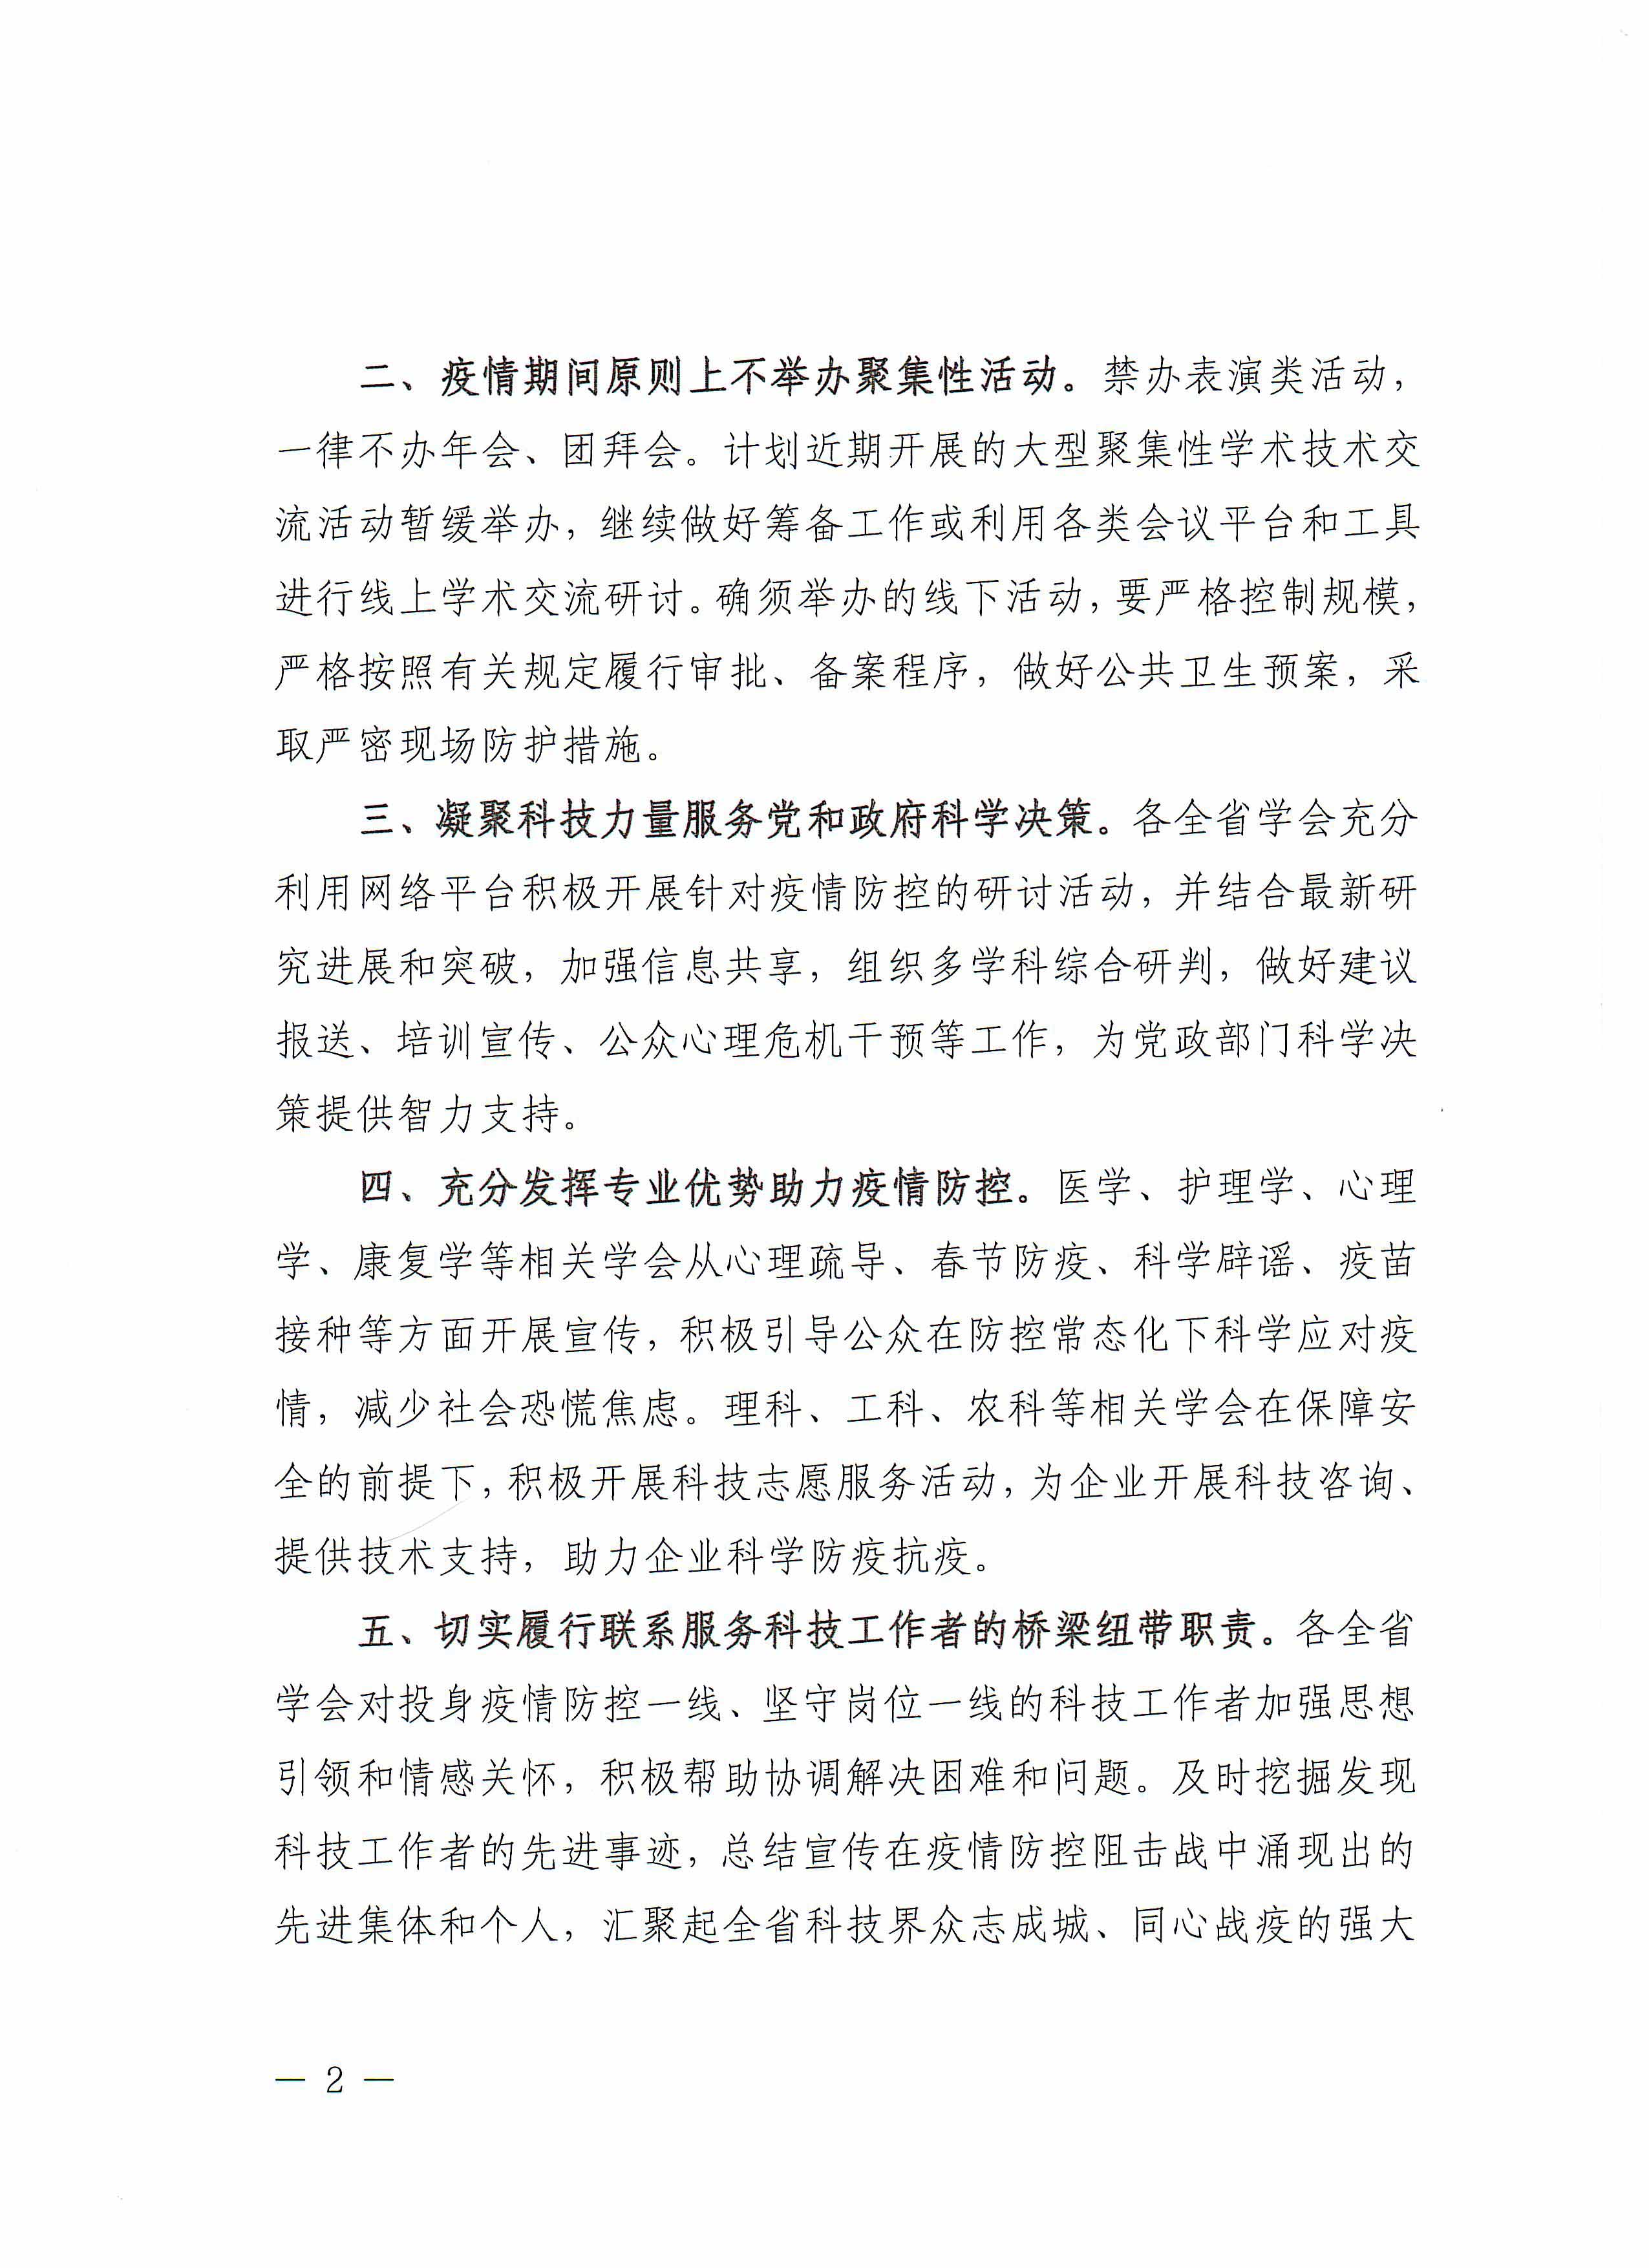 河南省科协关于所属全省学会做好疫情防控工作的通知_页面_2.jpg